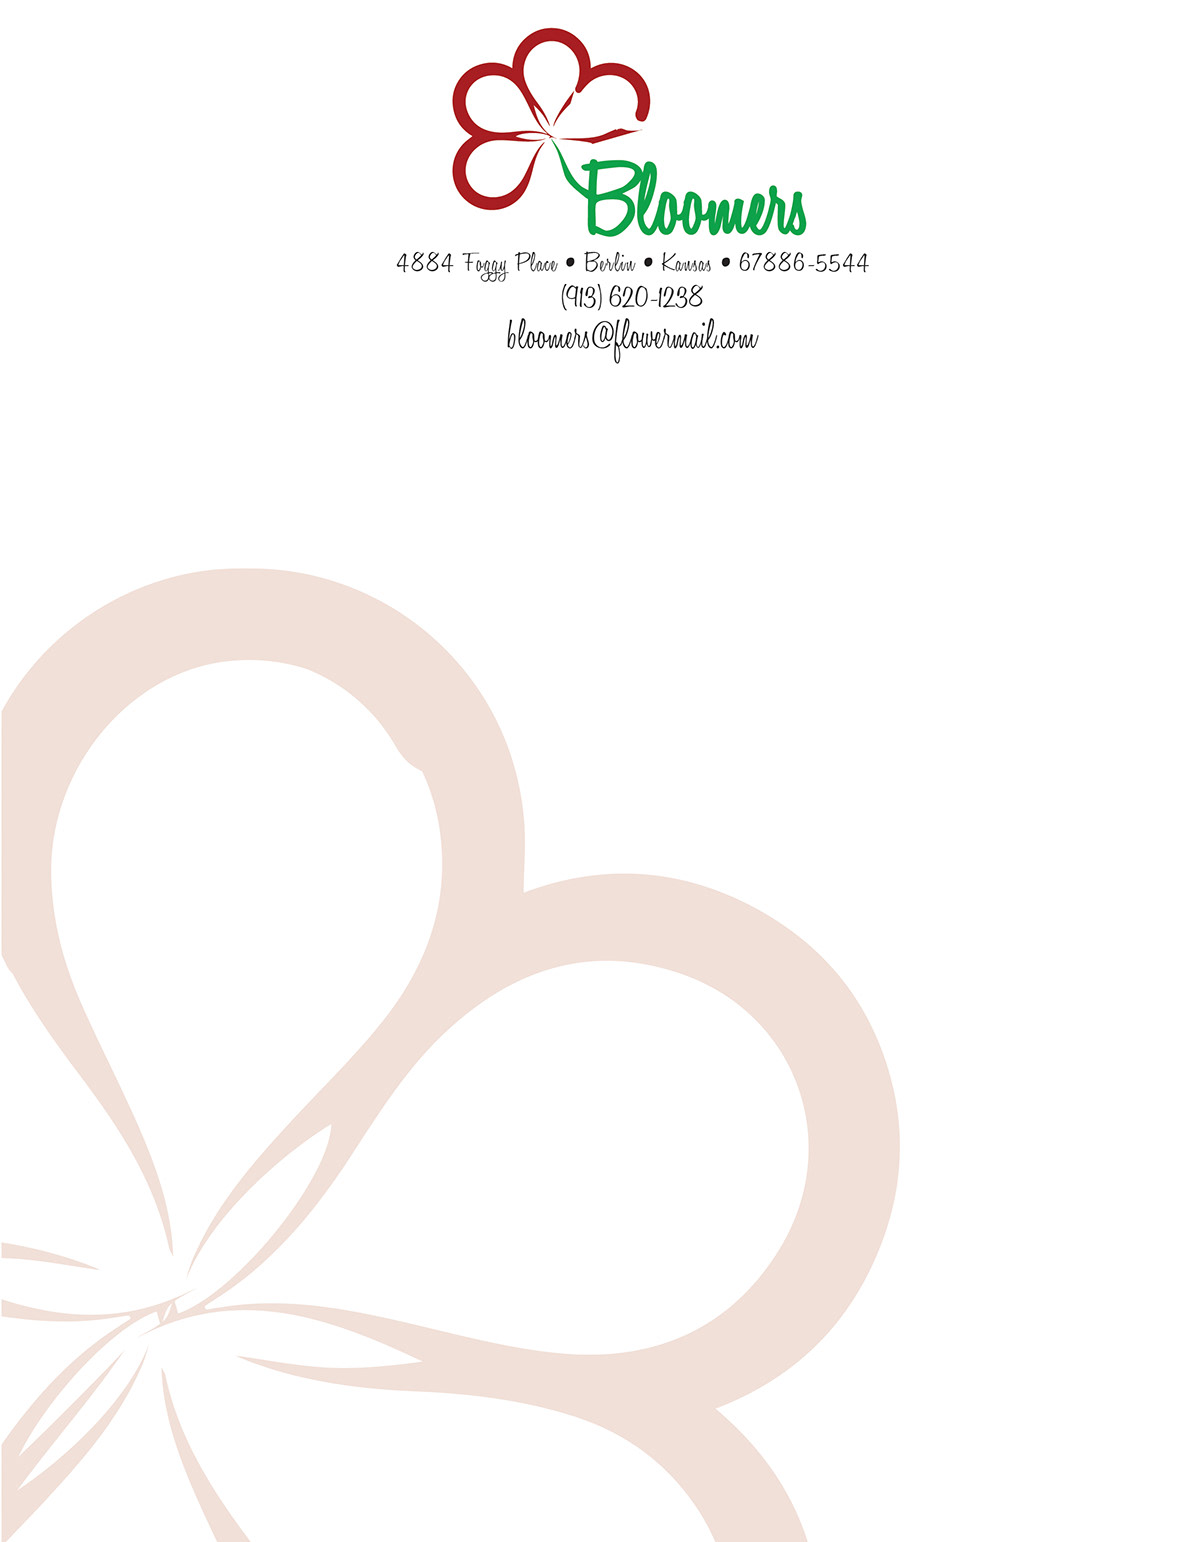 Flowers logo brand identity